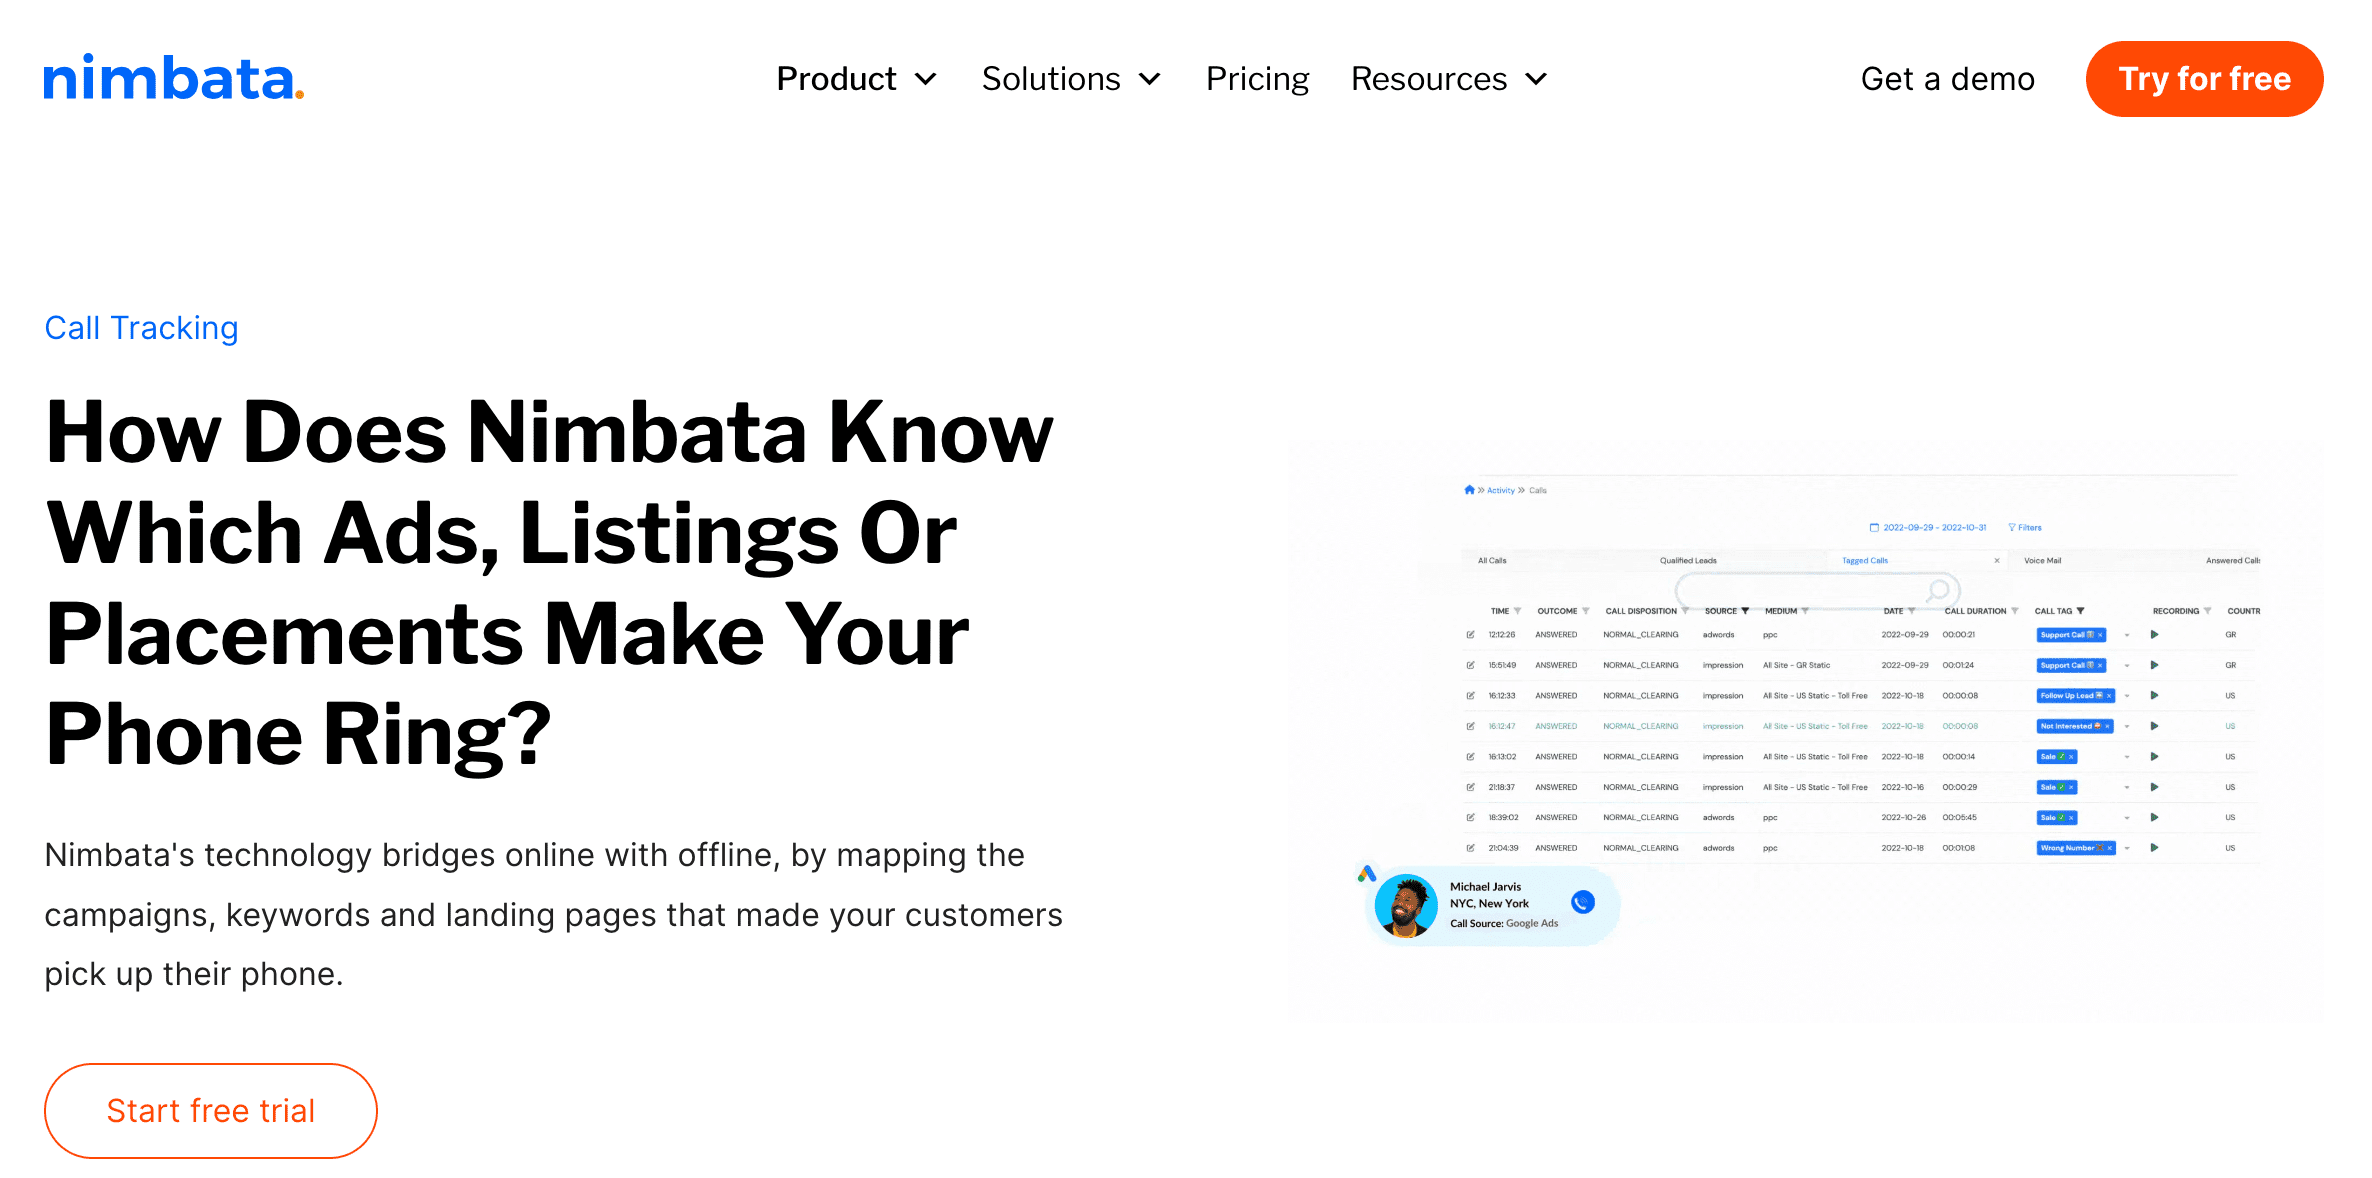 nimbata online call tracking basic